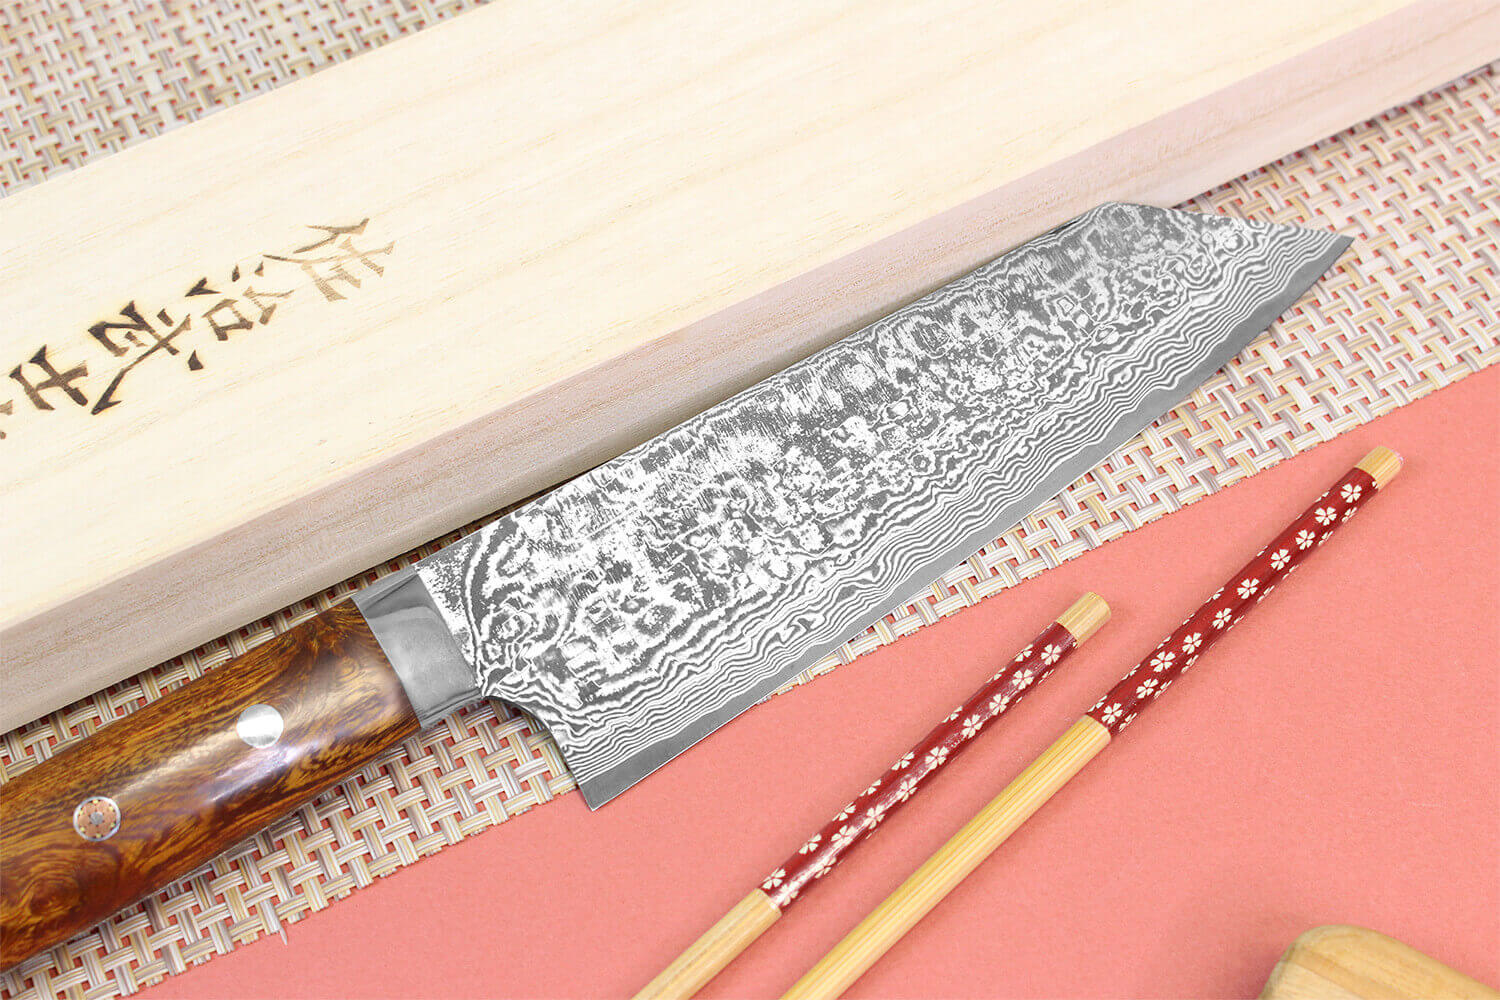 Test du couteau japonais artisanal Takeshi Saji R2 Damas 